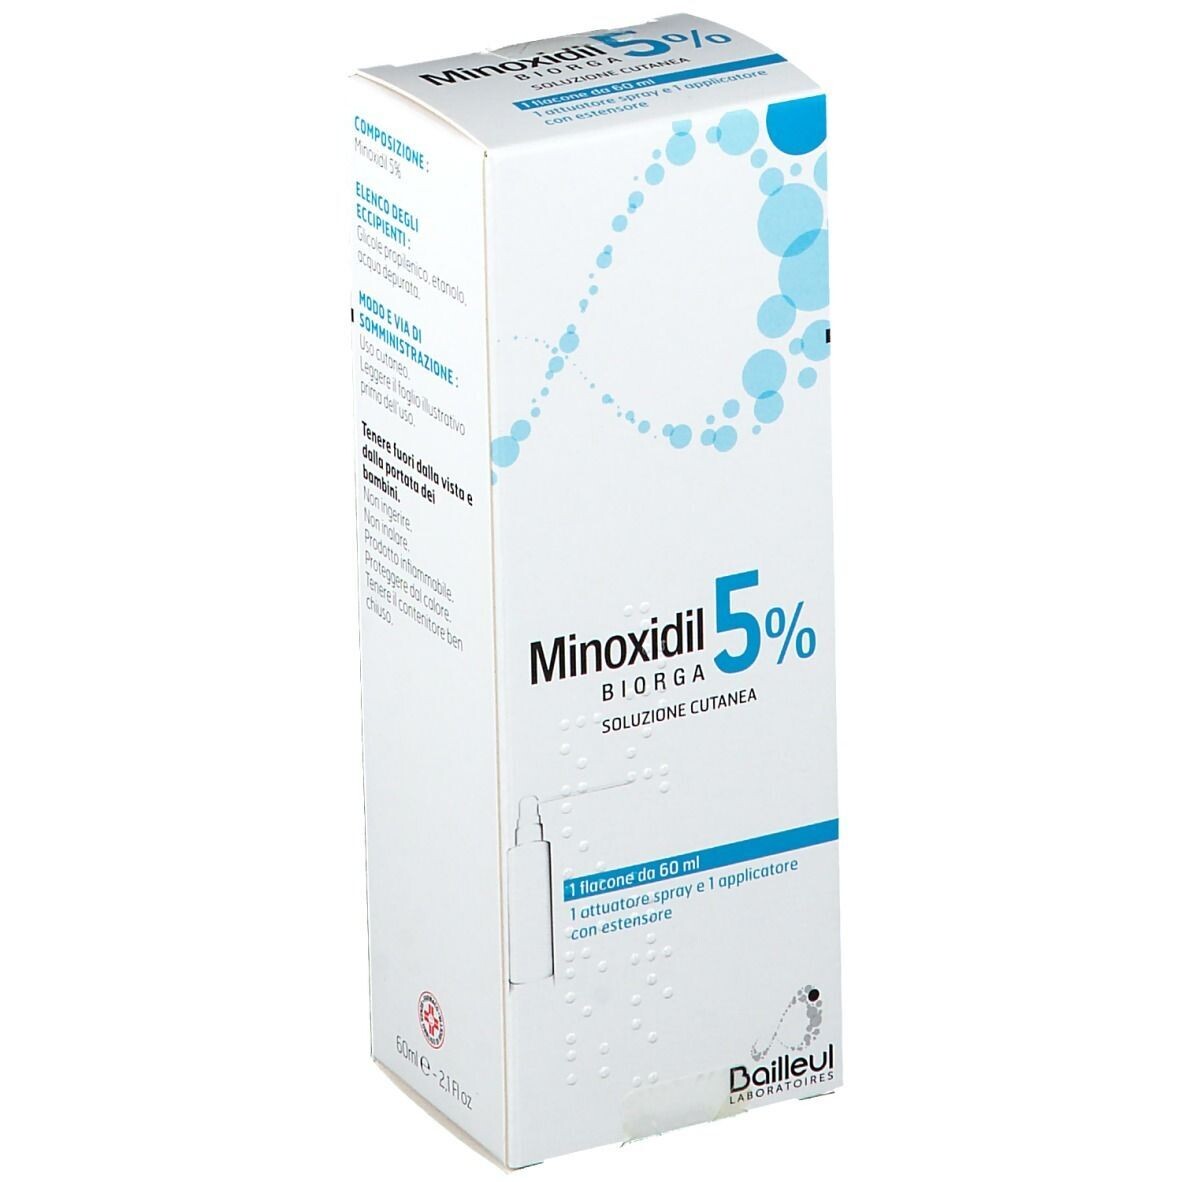 Minoxidil Biorga soluzione cutanea 5% per alopecia 60ml